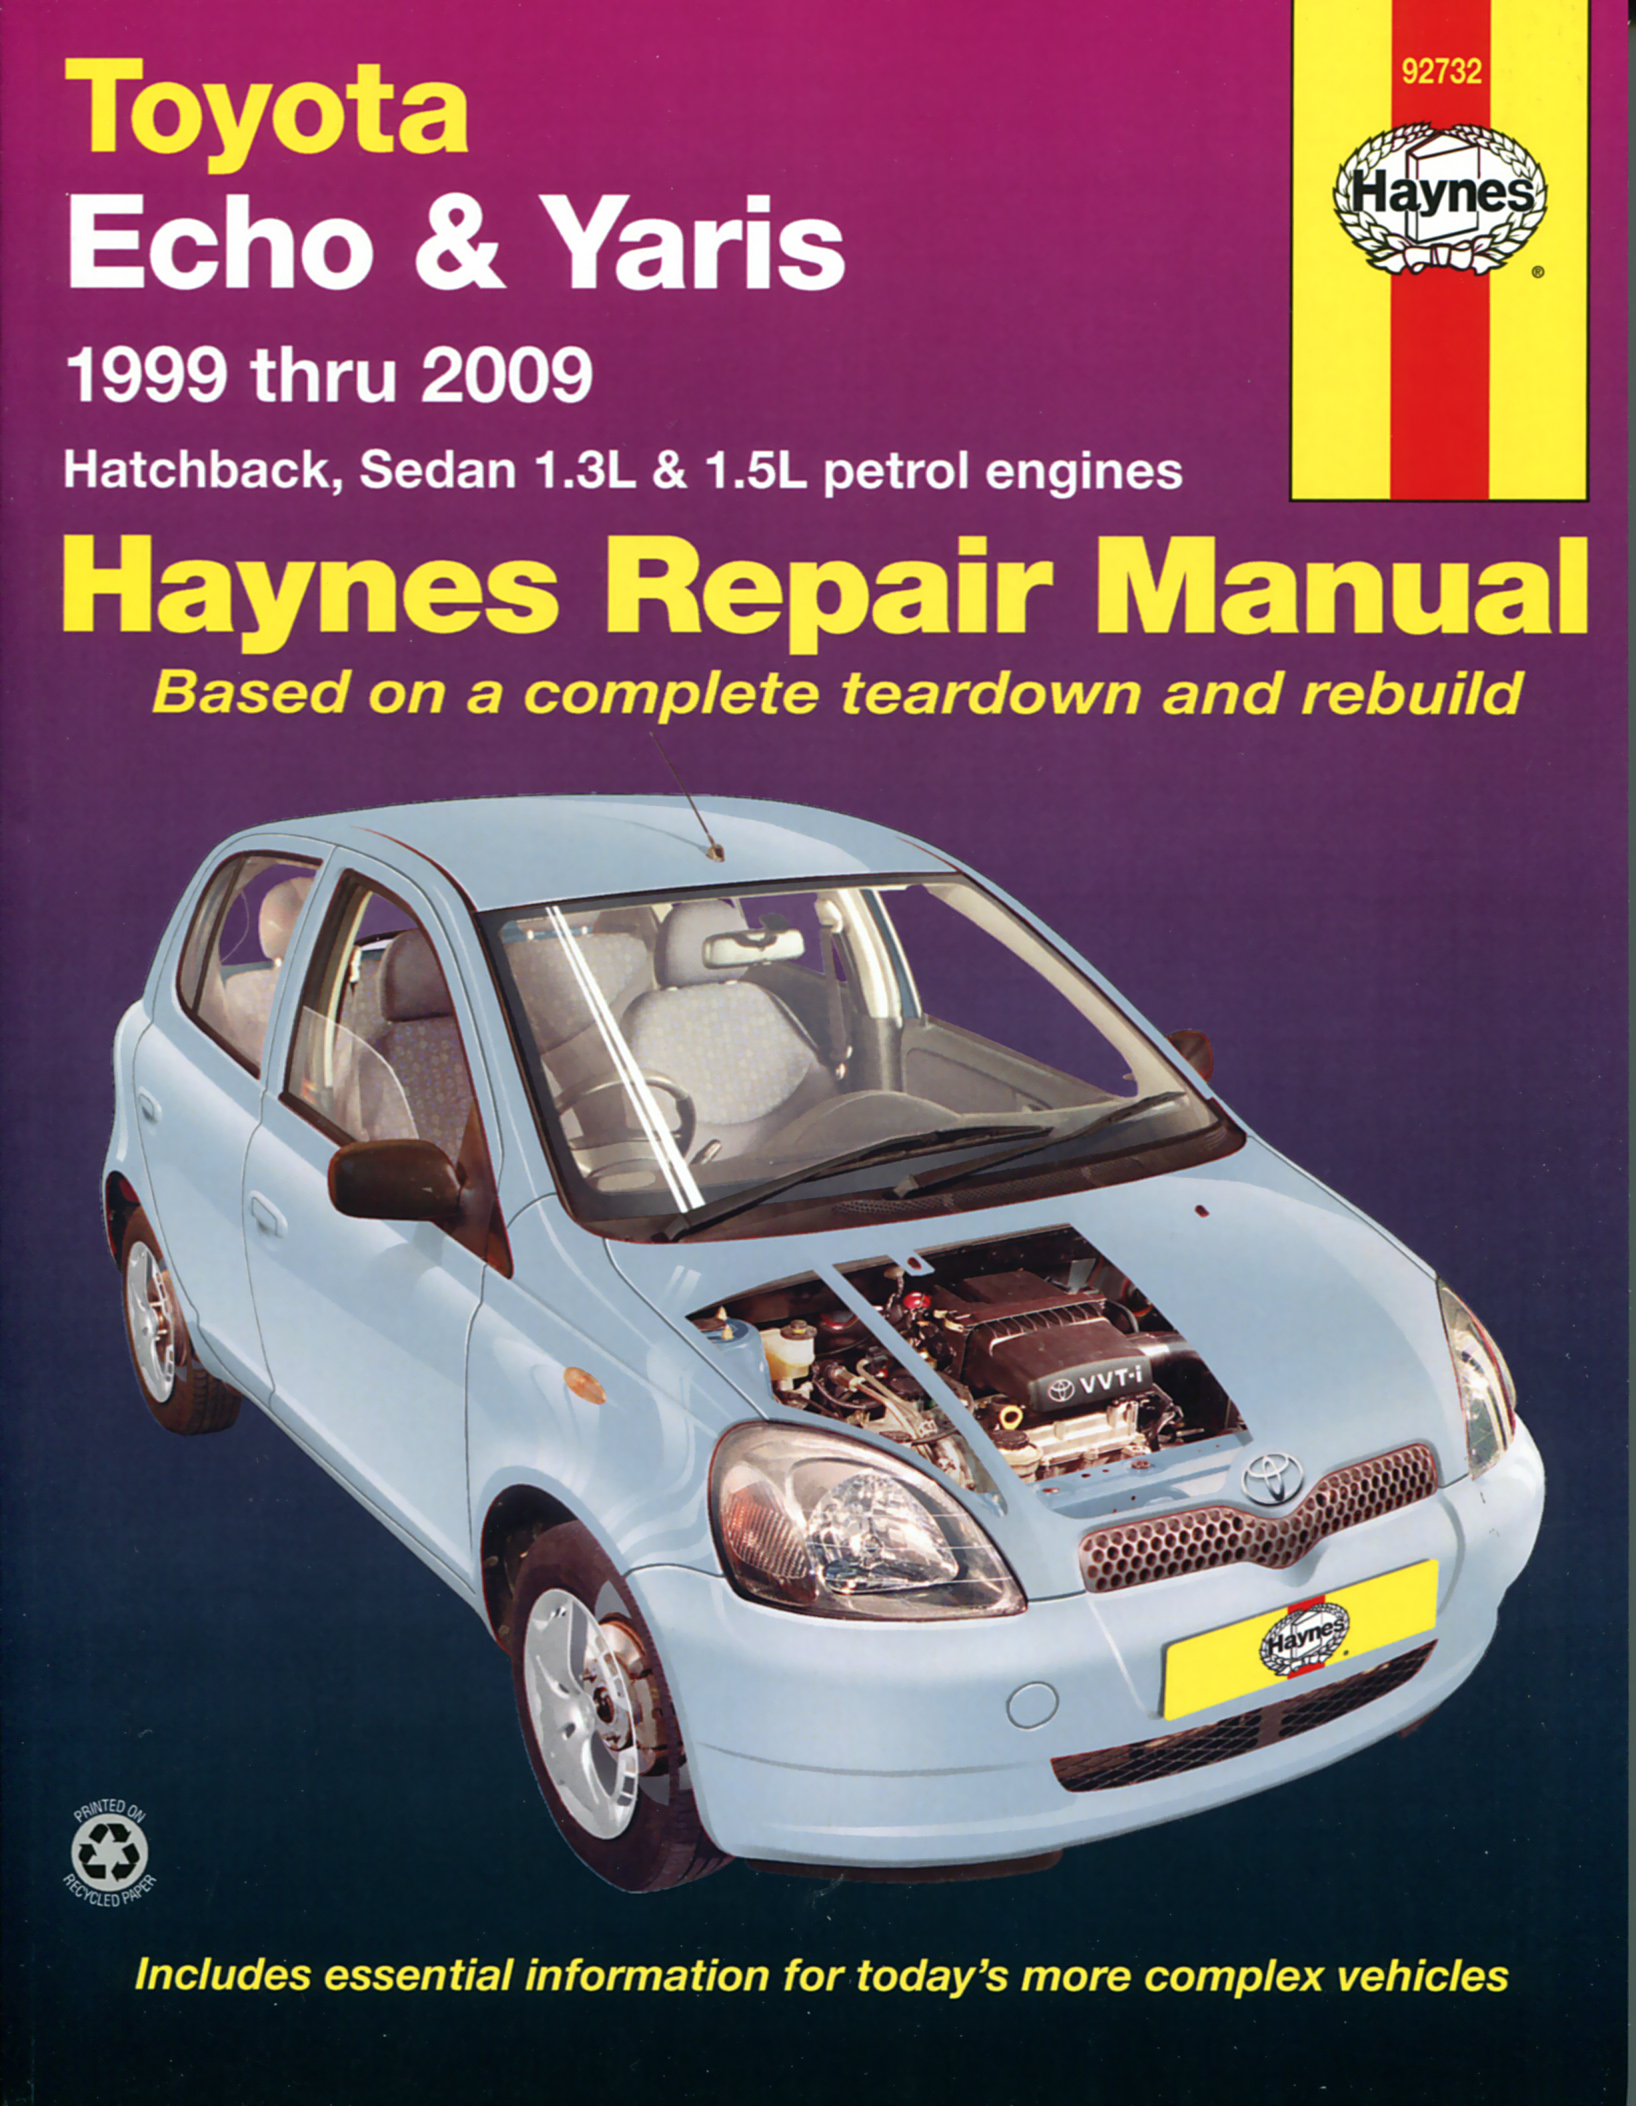 Haynes Repair Manual Toyota Download